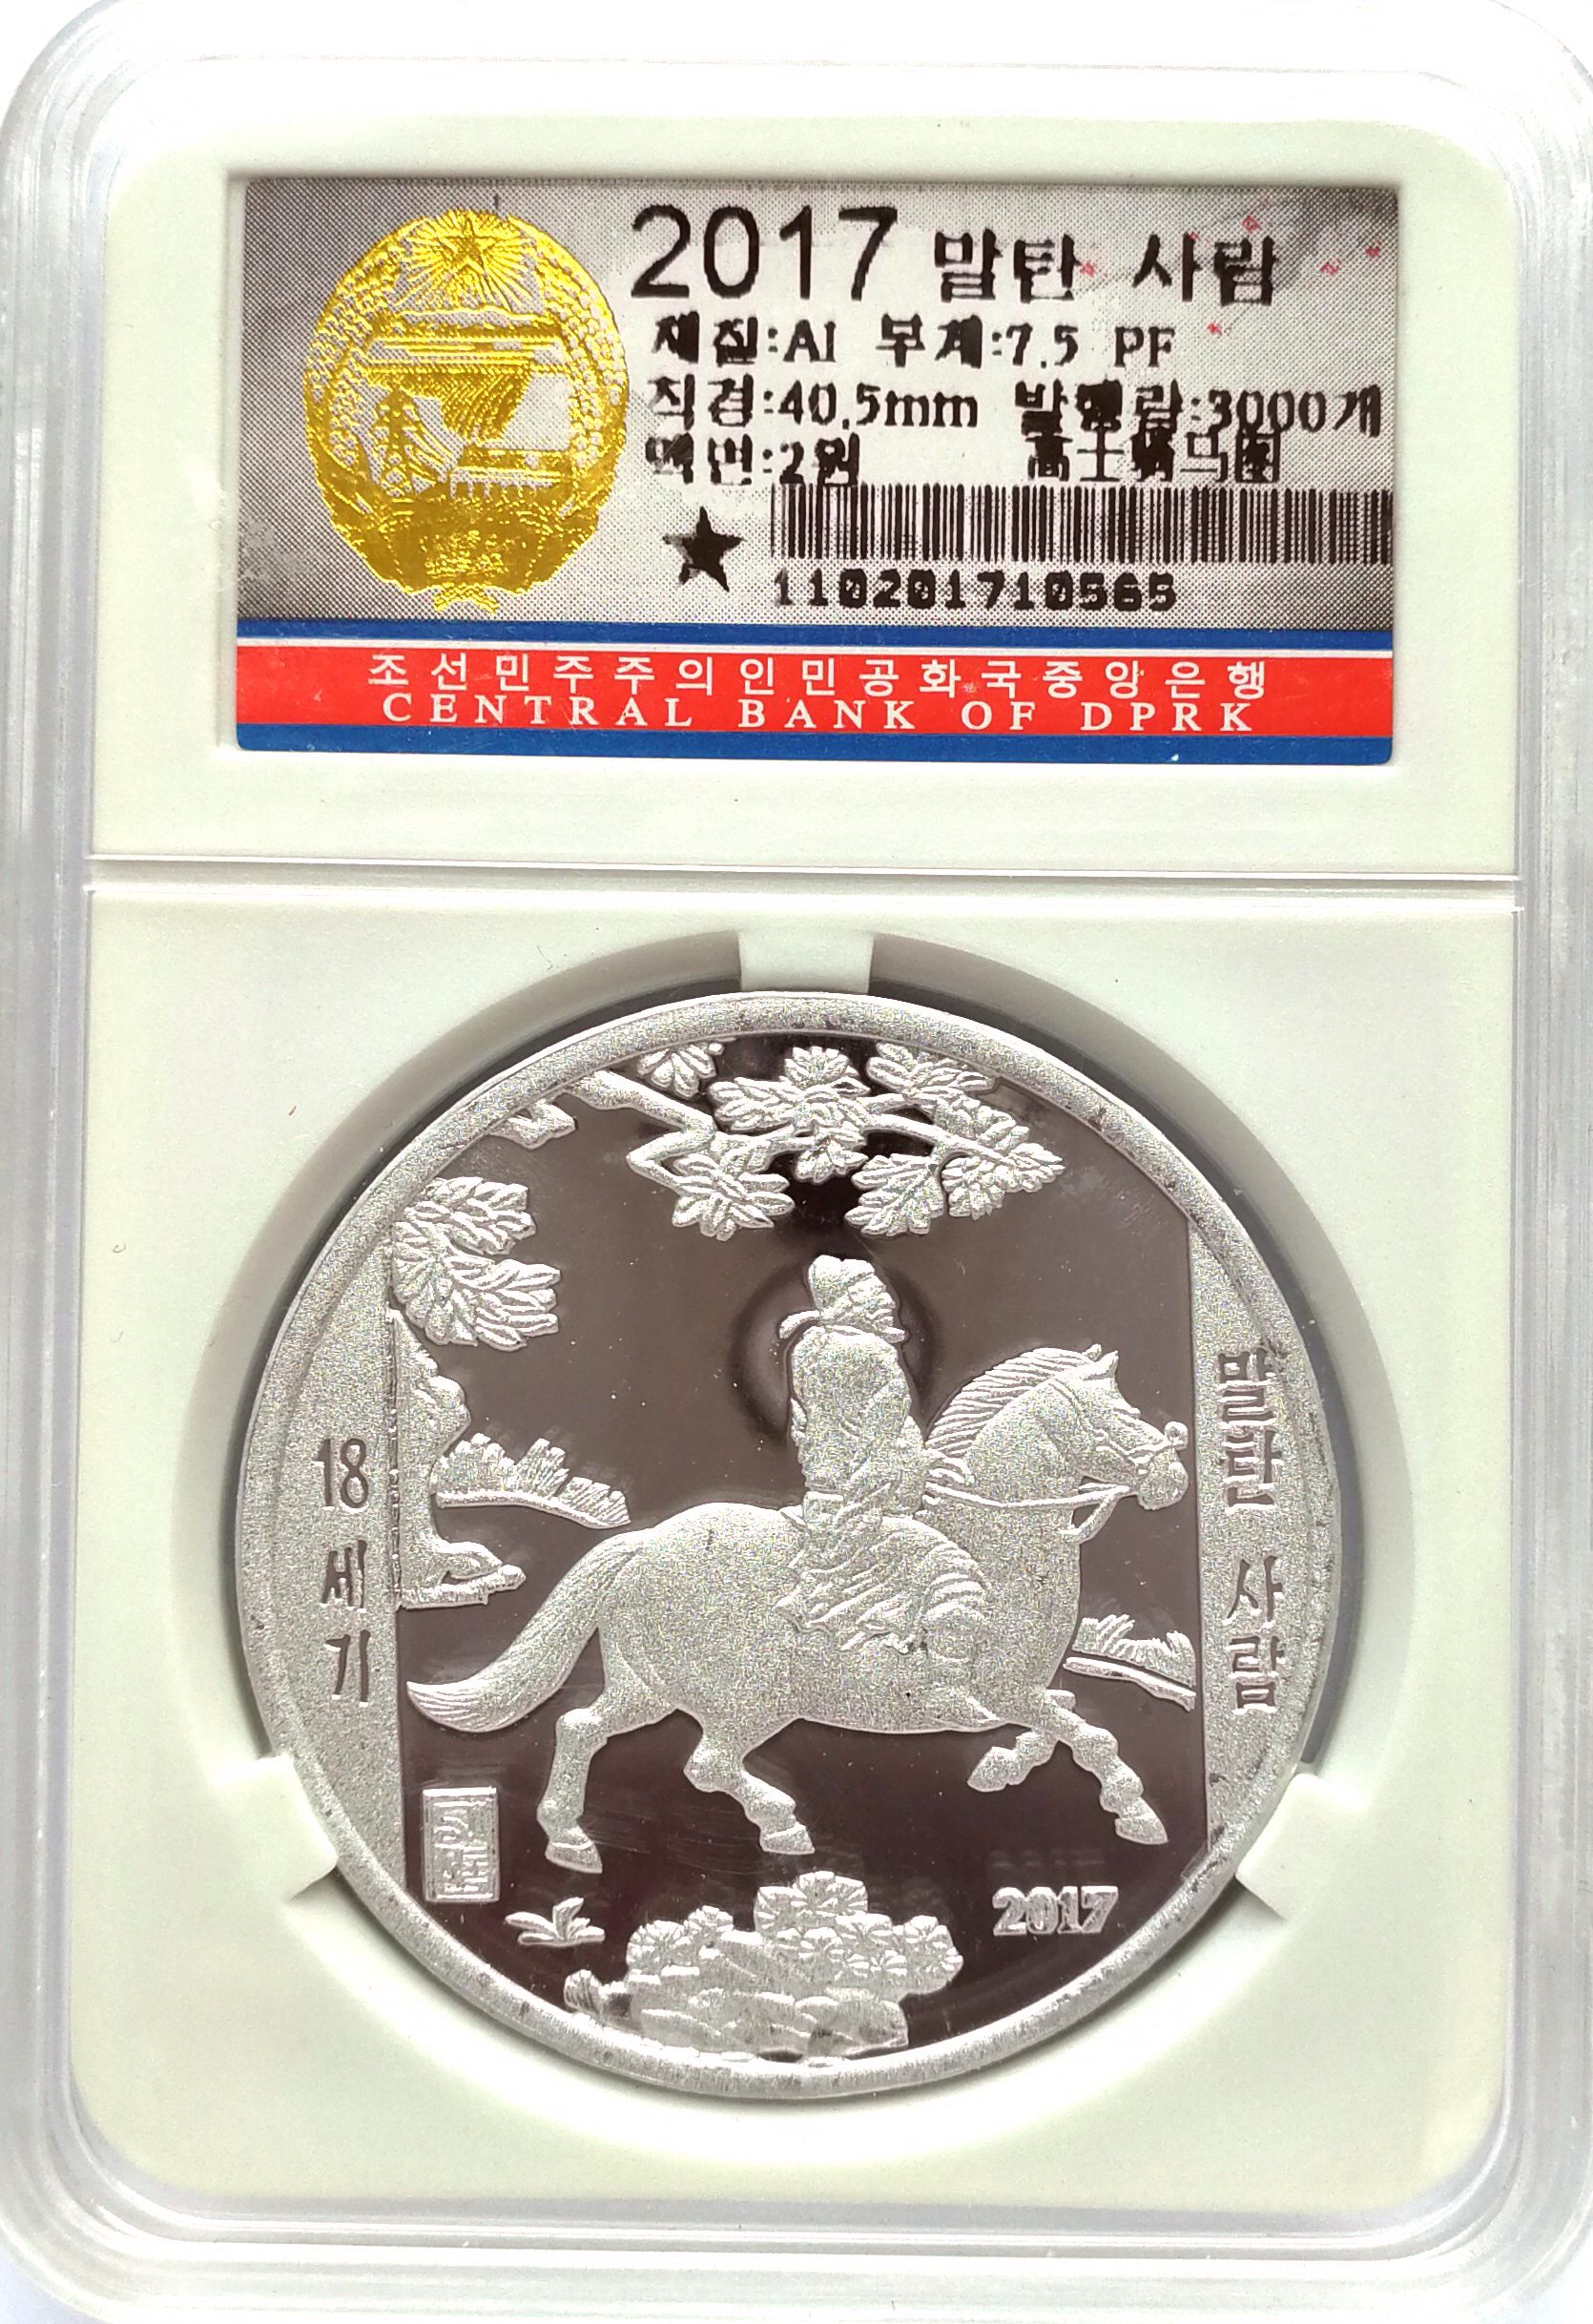 L3215, Korea Painting Coin "Official Horse Riding", Korean Grade, Alu 2017